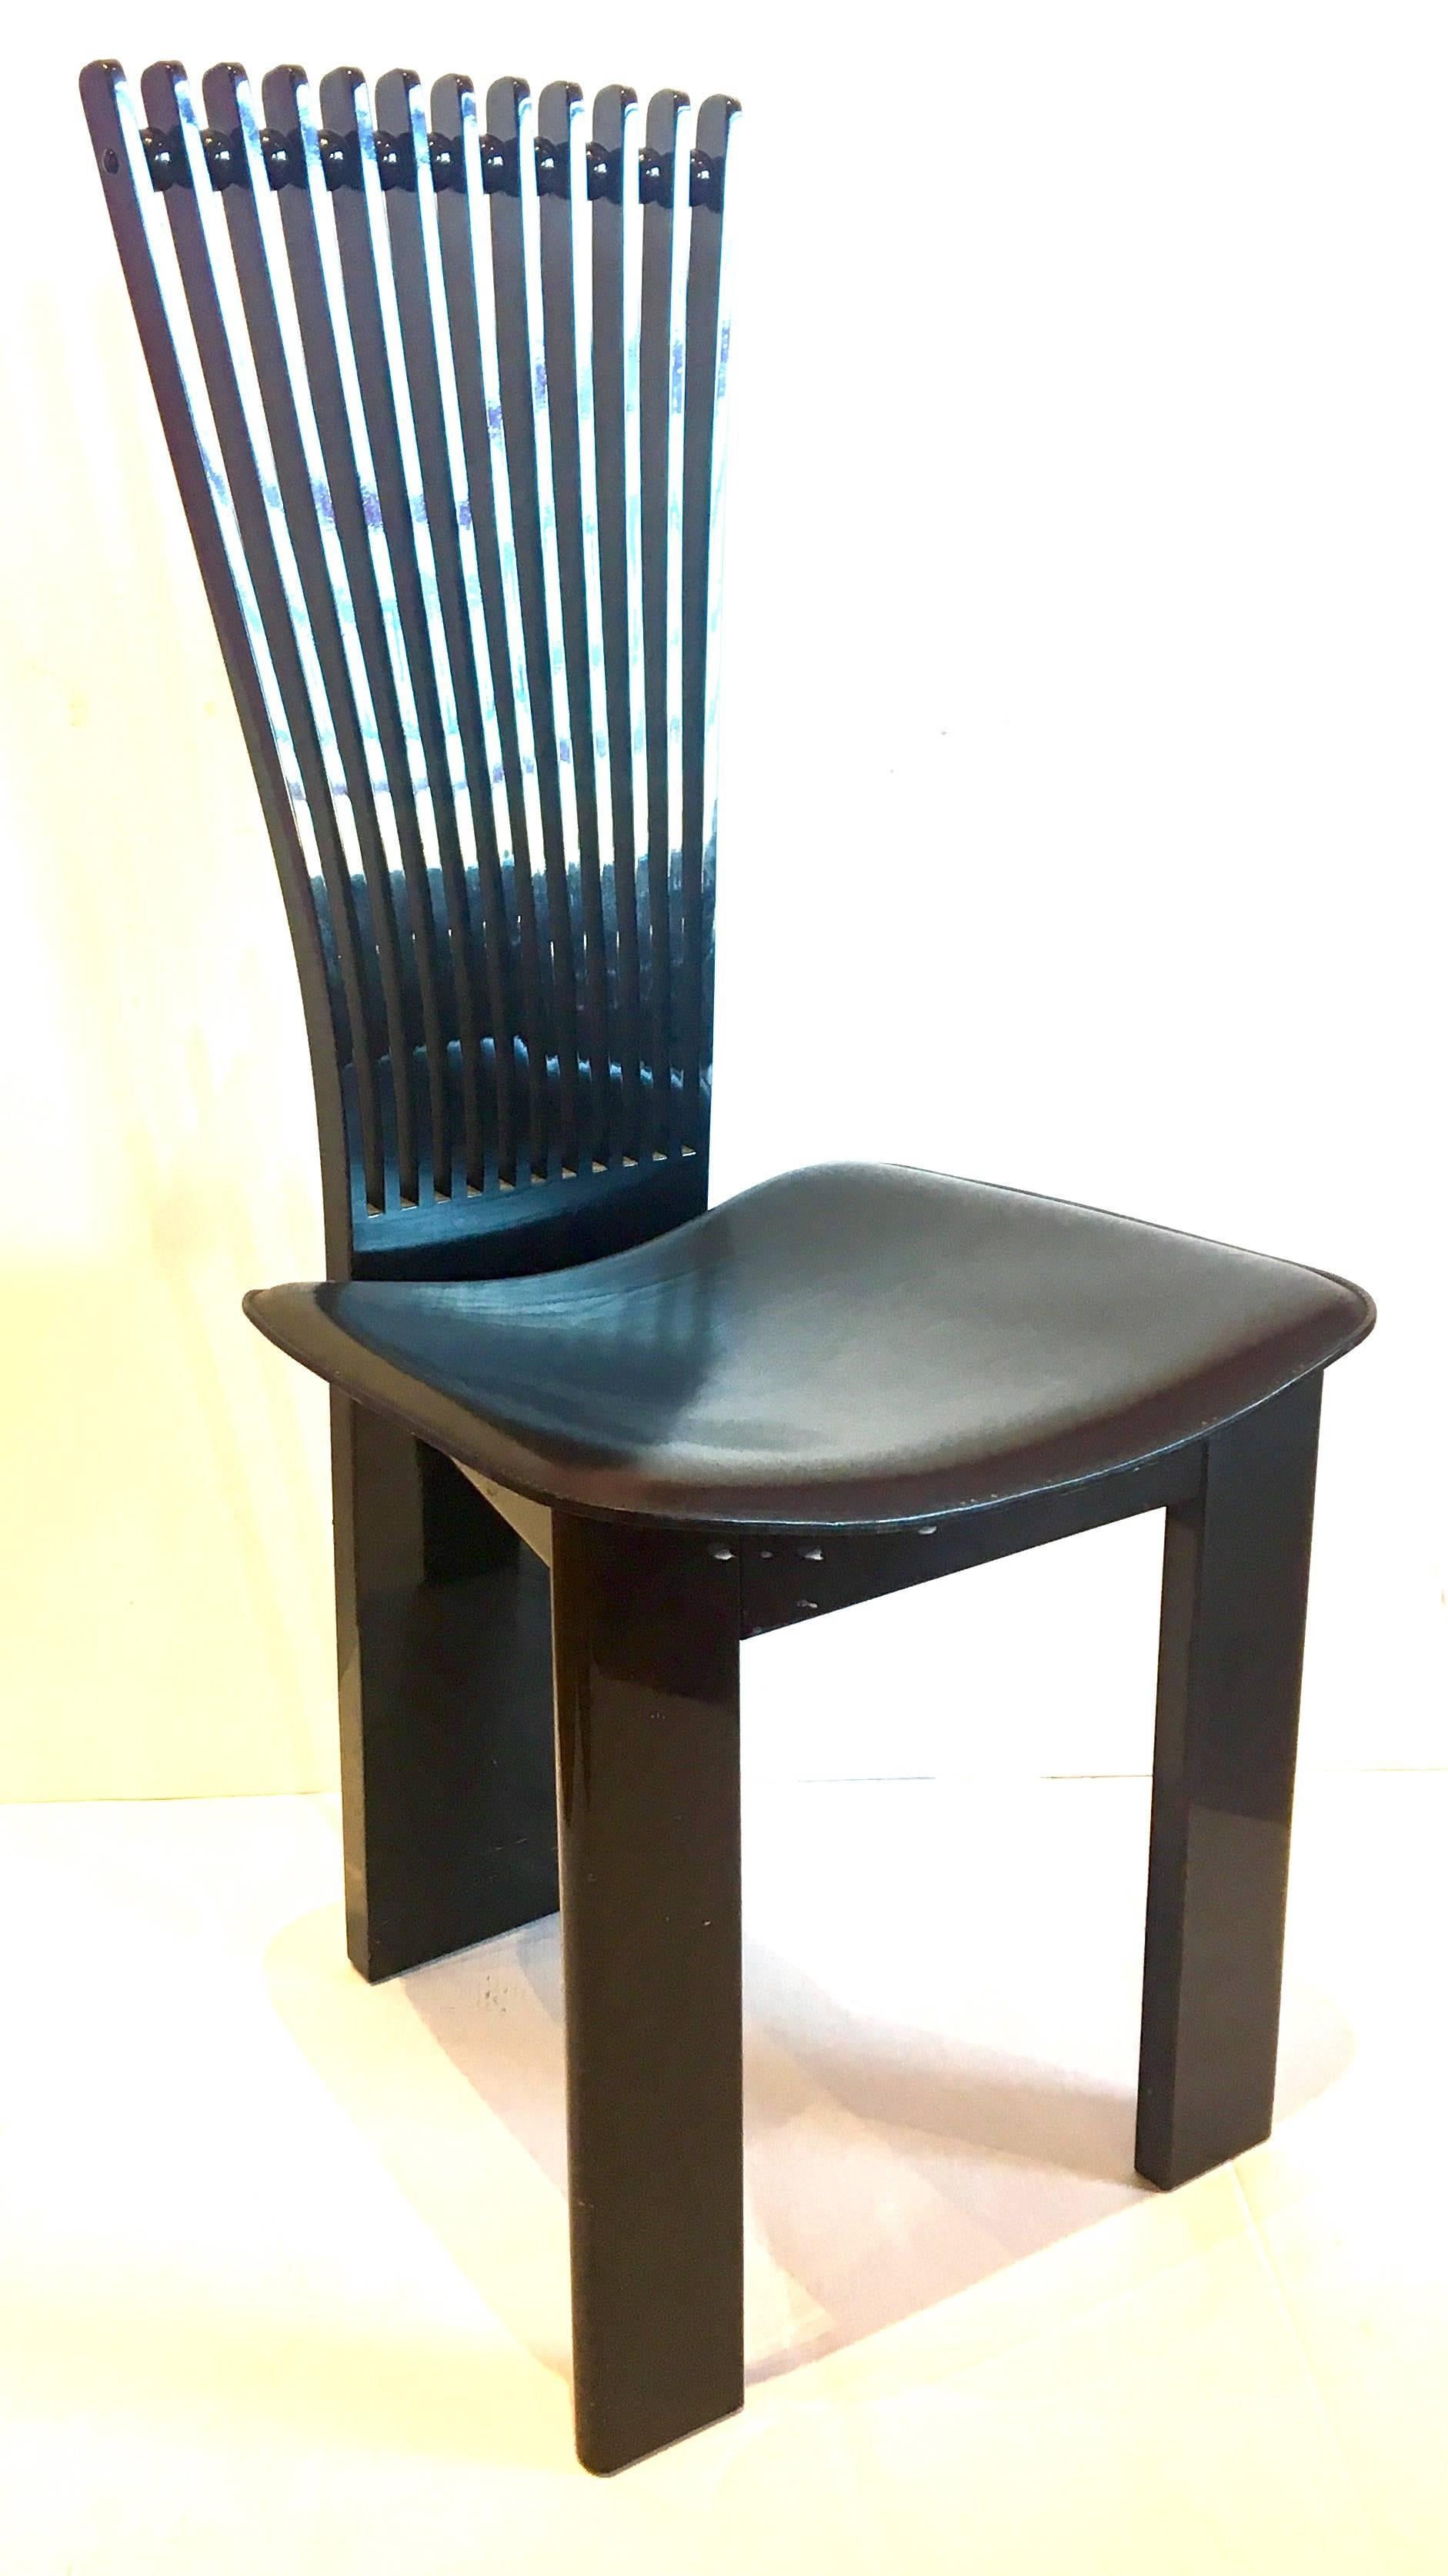 Ensemble de quatre chaises italiennes à haut dossier de Pietro Costantini, circa 1990, en finition laquée noire brillante et assise en cuir noir cousu main, chaises élégantes, solides et robustes, estampillées fabriquées en Italie par Pietro